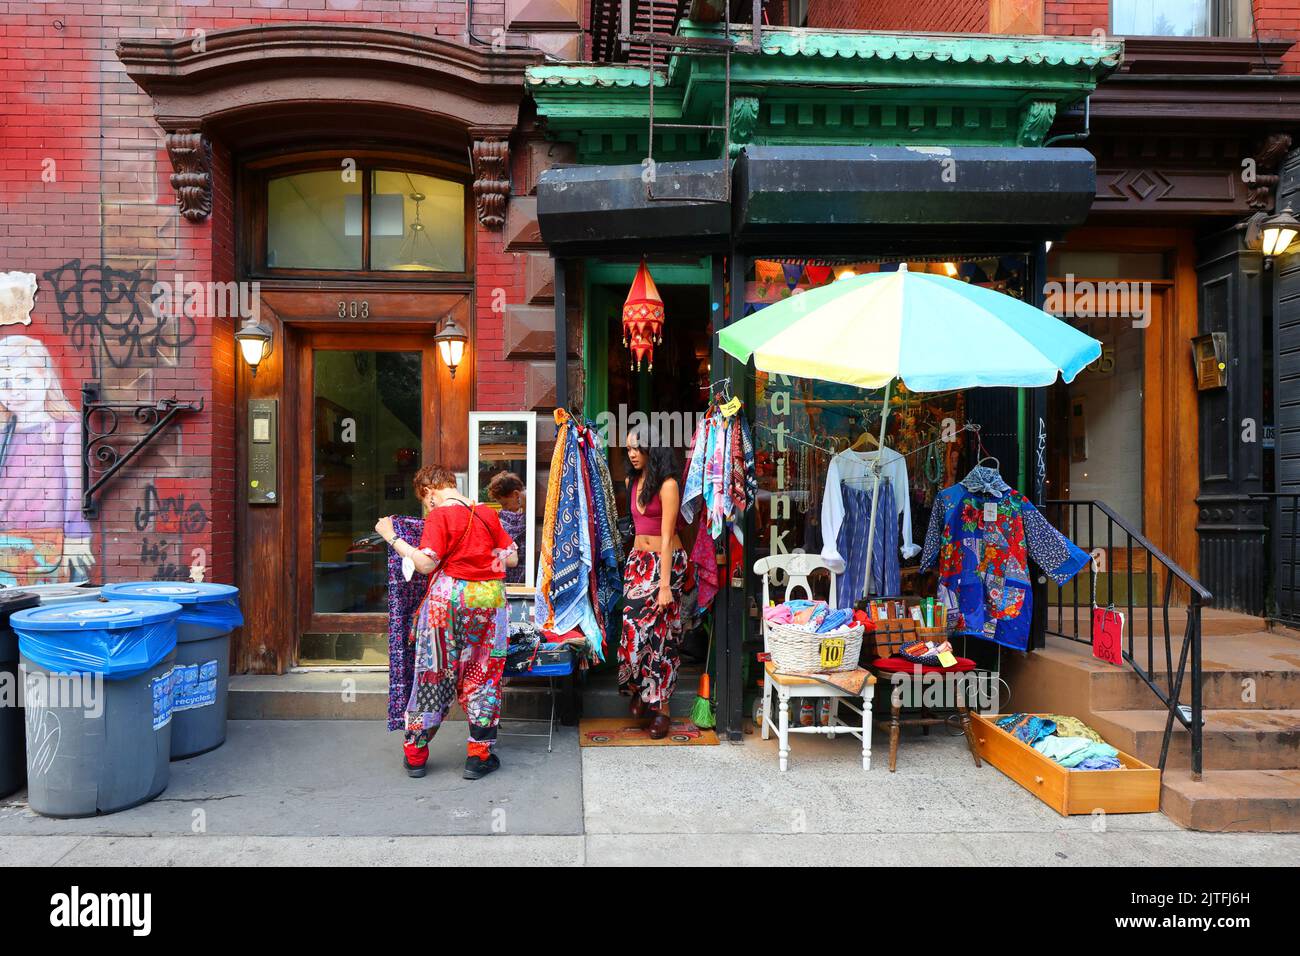 Katinka, 303 E 9. St, New York, NYC Foto von einem farbenfrohen indischen Bekleidungsgeschäft und Accessoires in Manhattans East Village-Viertel Stockfoto